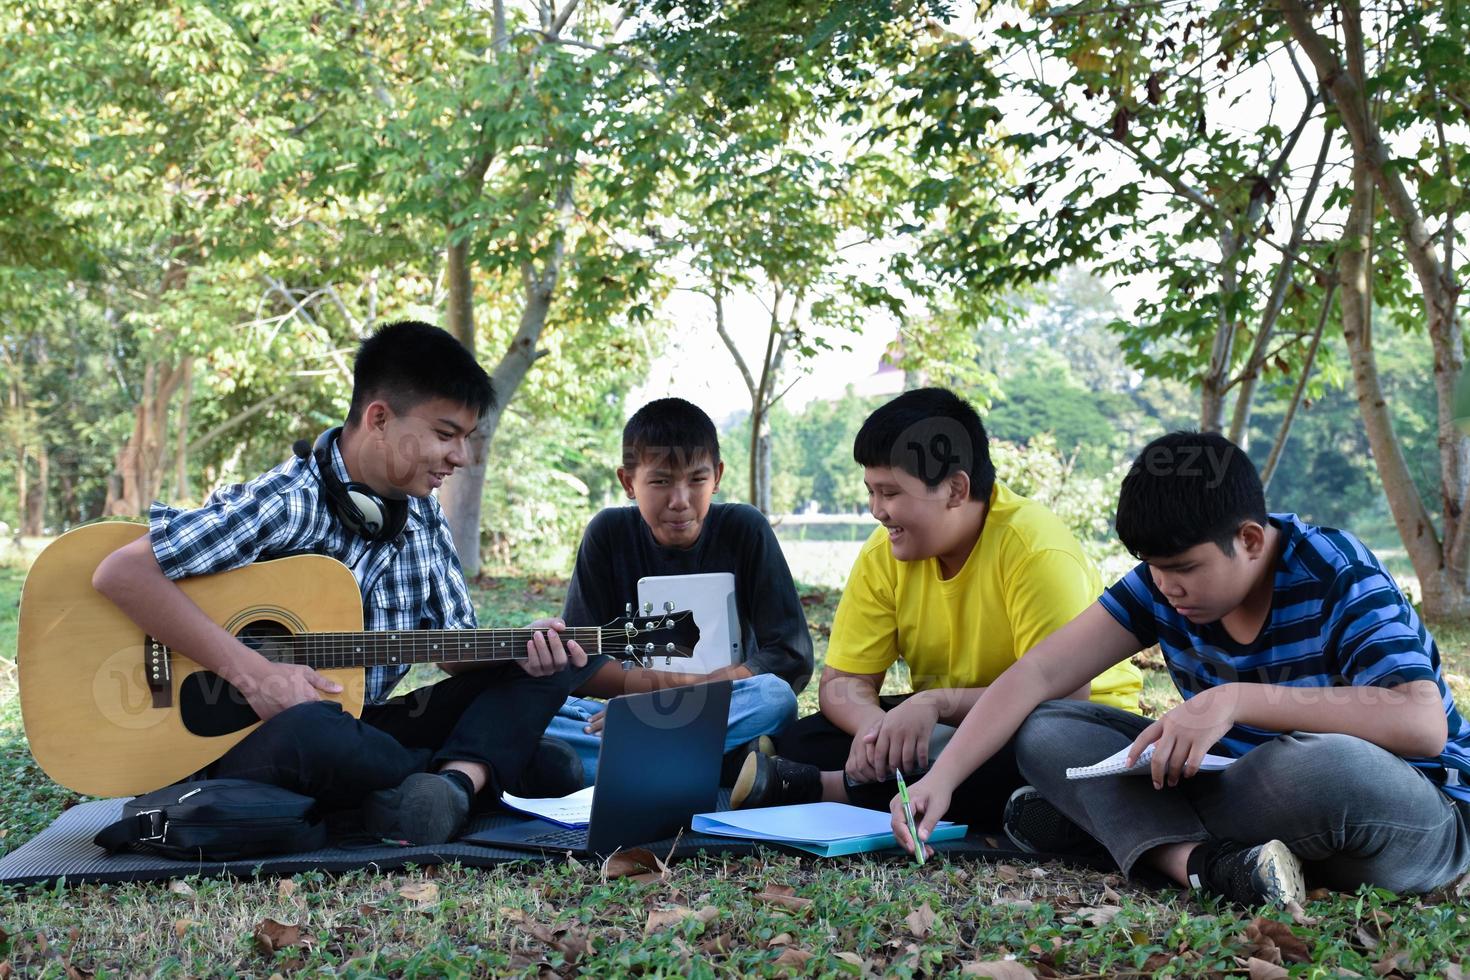 retrato jovens adolescentes asiáticos passando o tempo livre juntos ao longo do caminho caminhando para casa depois da aula de música na escola, conceito de casal asiático jovem adulto. foto